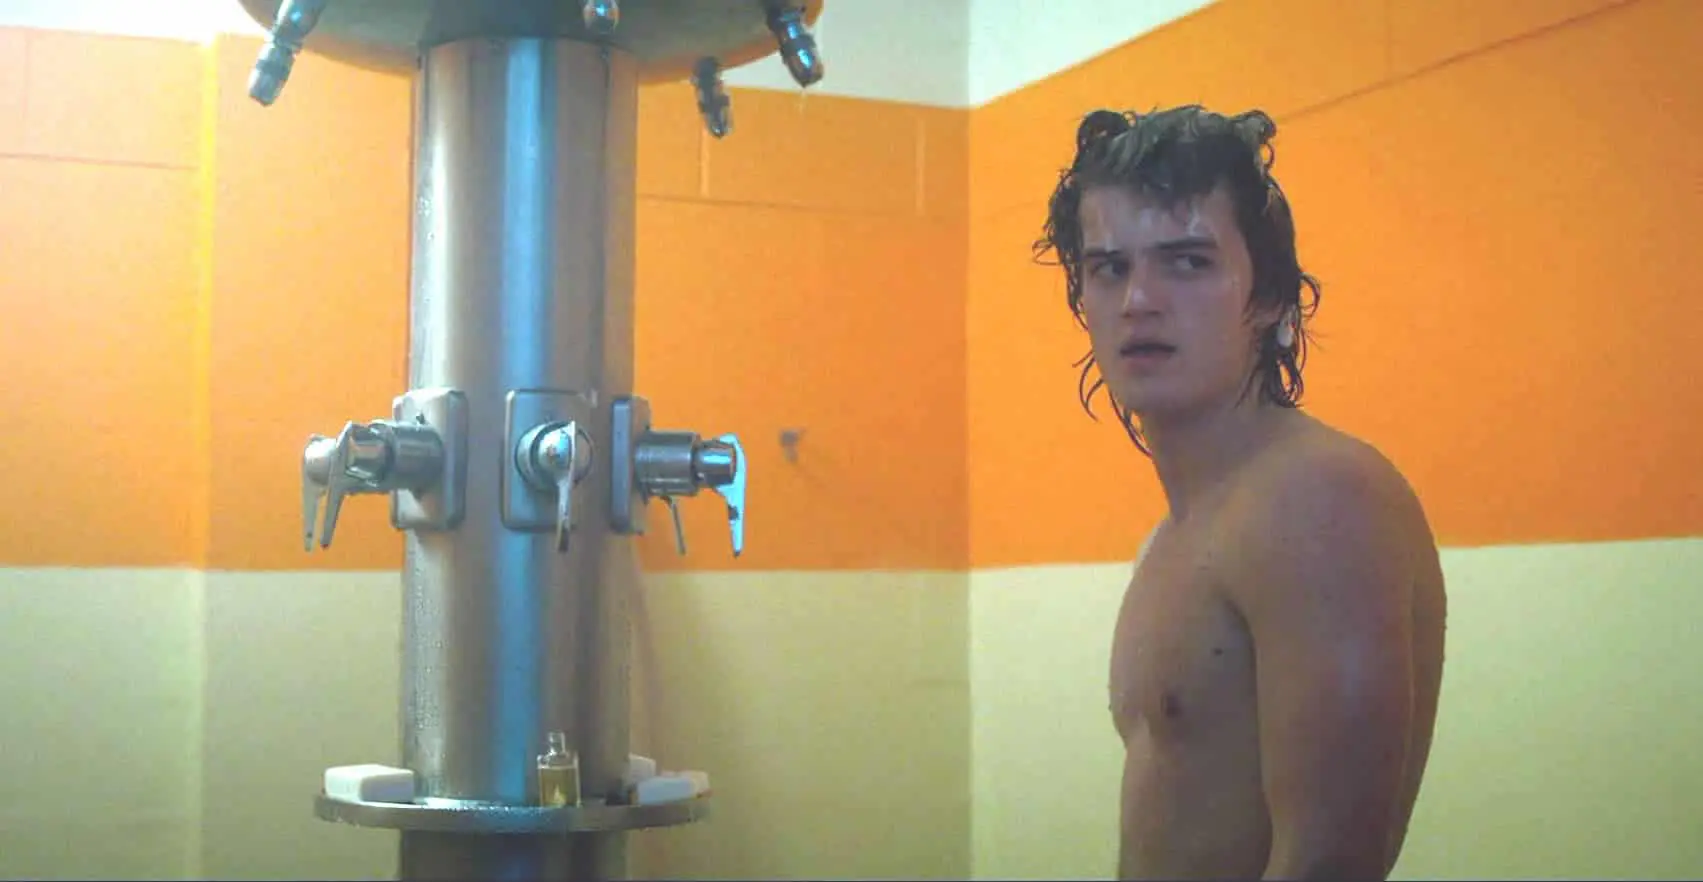 Joe Keery nude shower scene